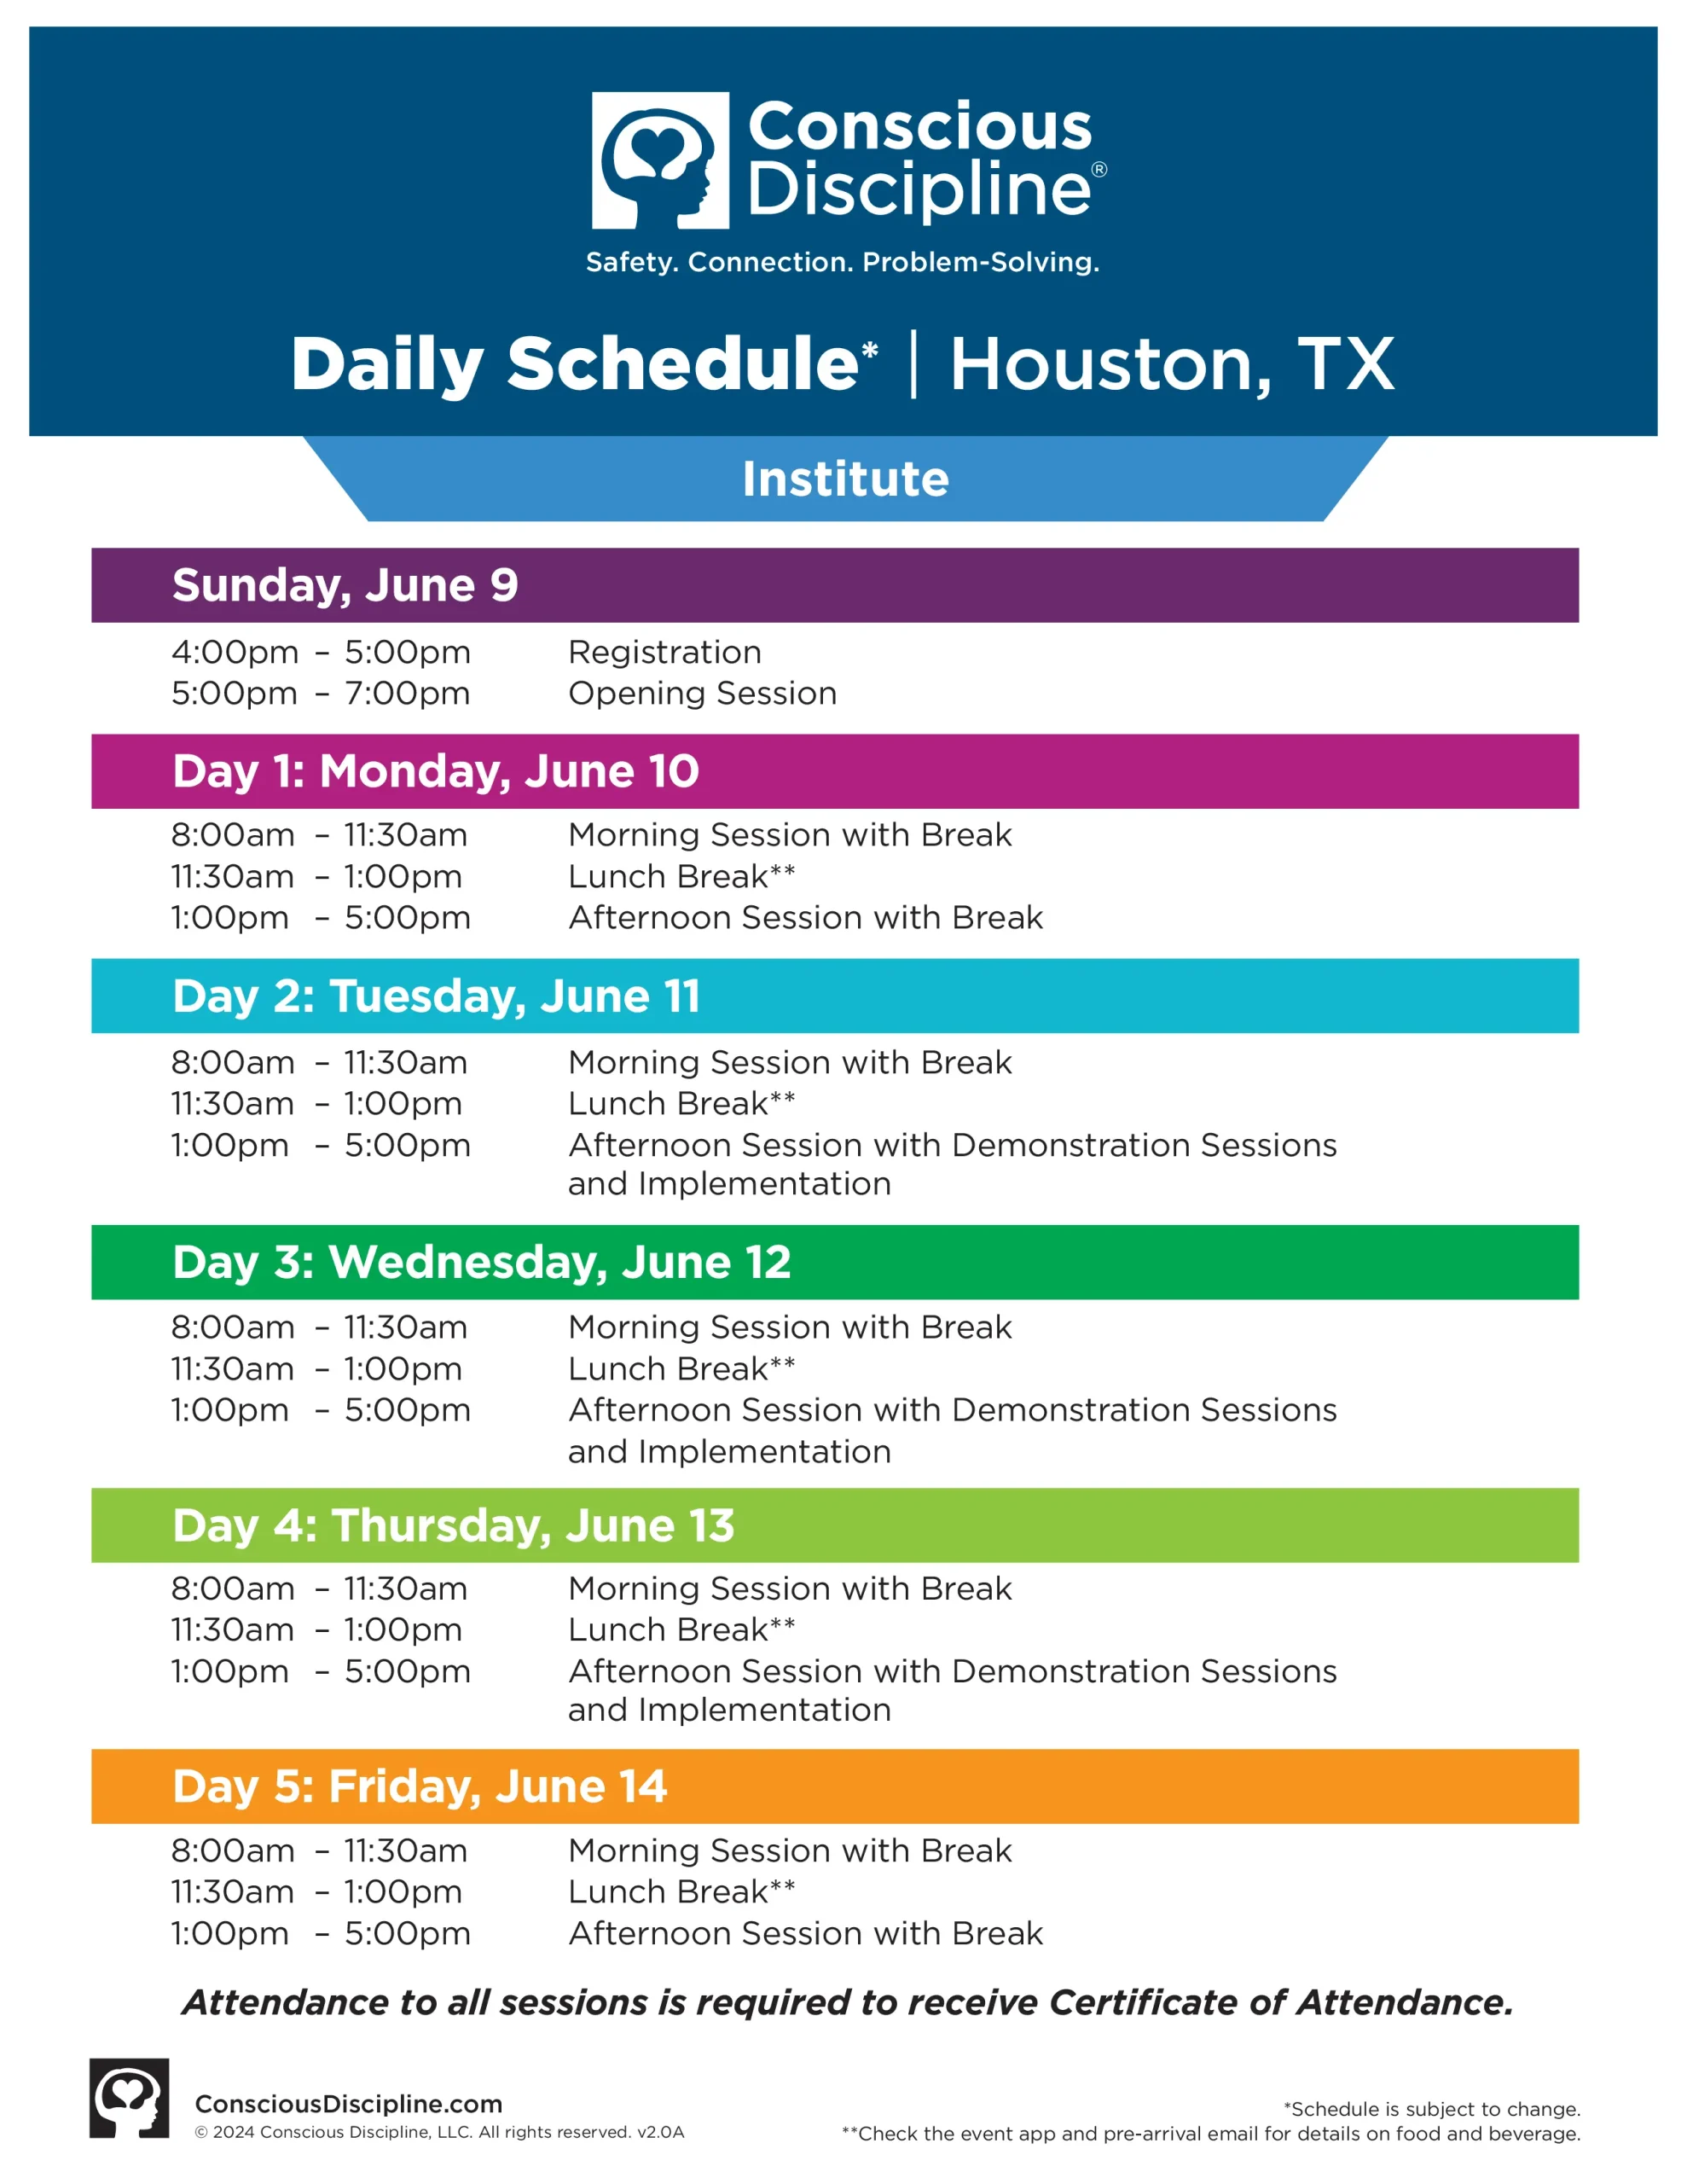 Houston TX event schedule